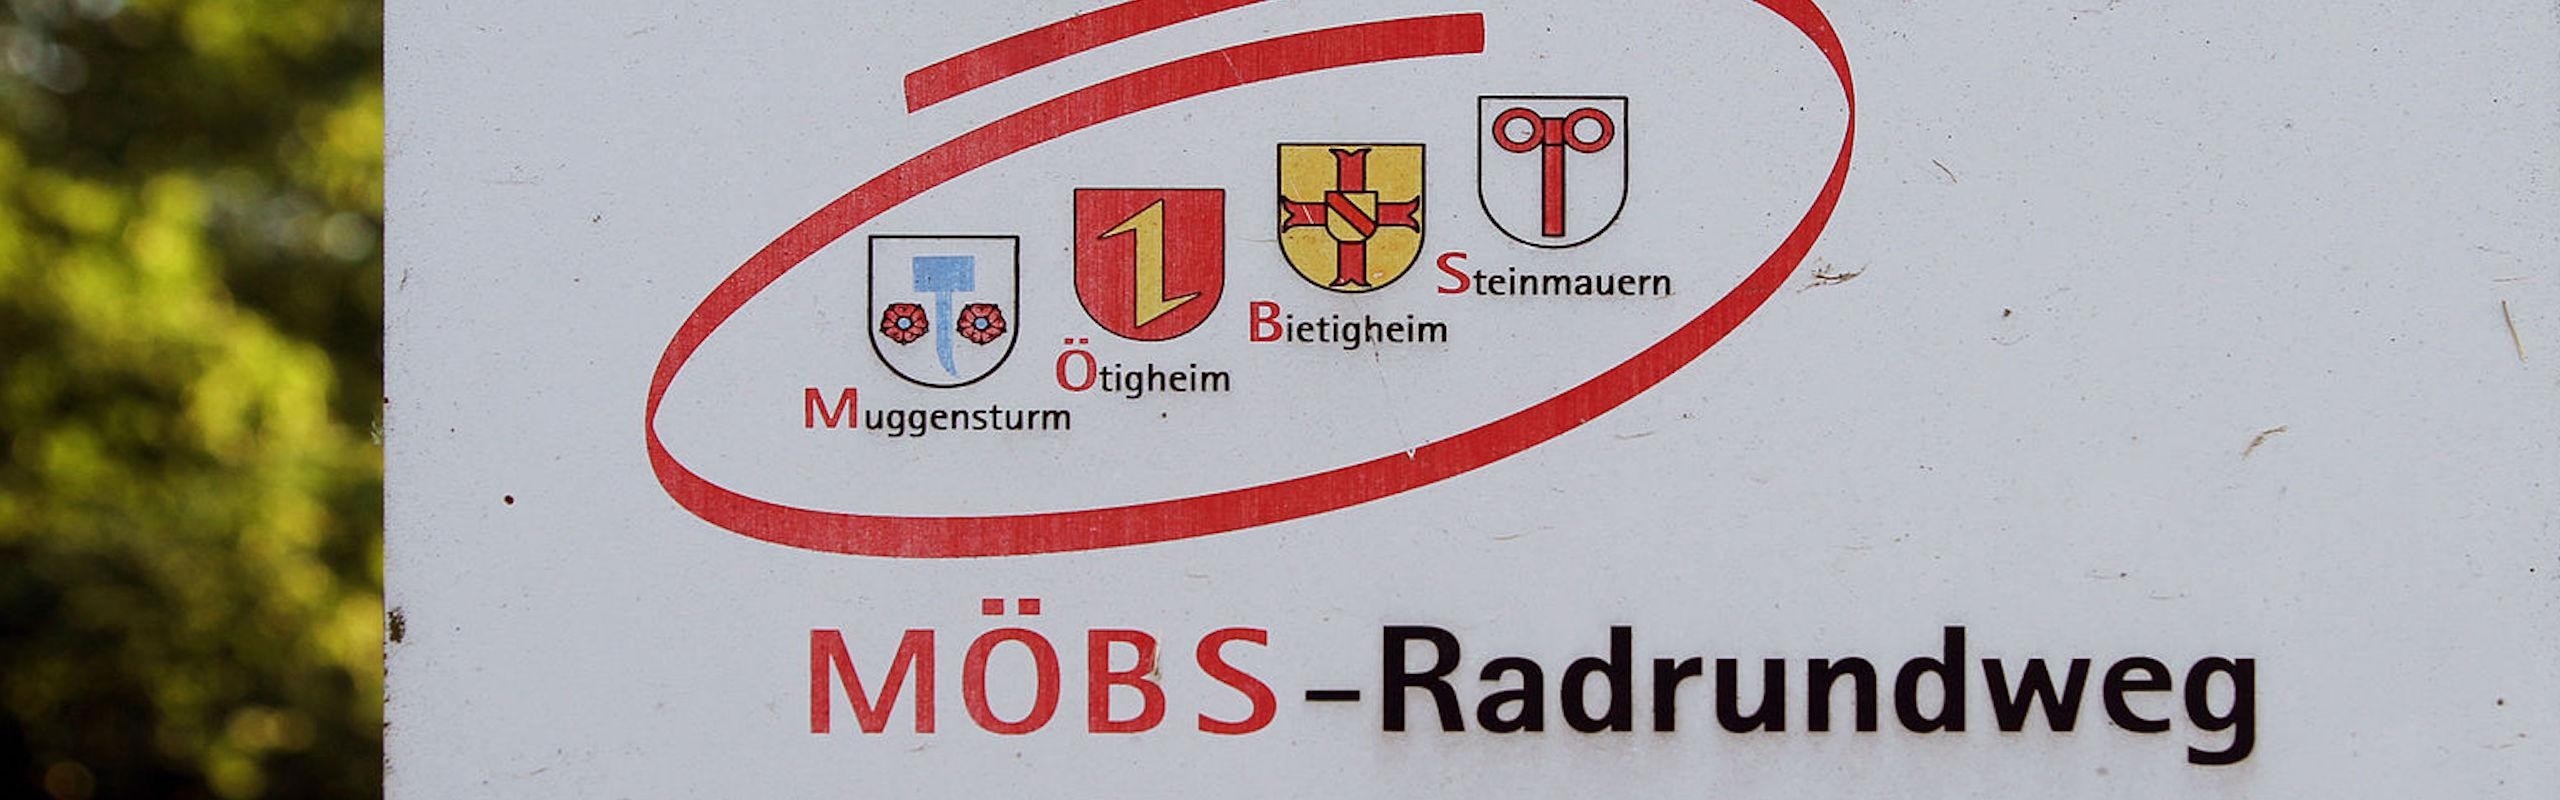 Schild vom MÖBS-Radweg mit den Wappen der vier Gemeinden und dem Titel "MÖBS-Radweg""